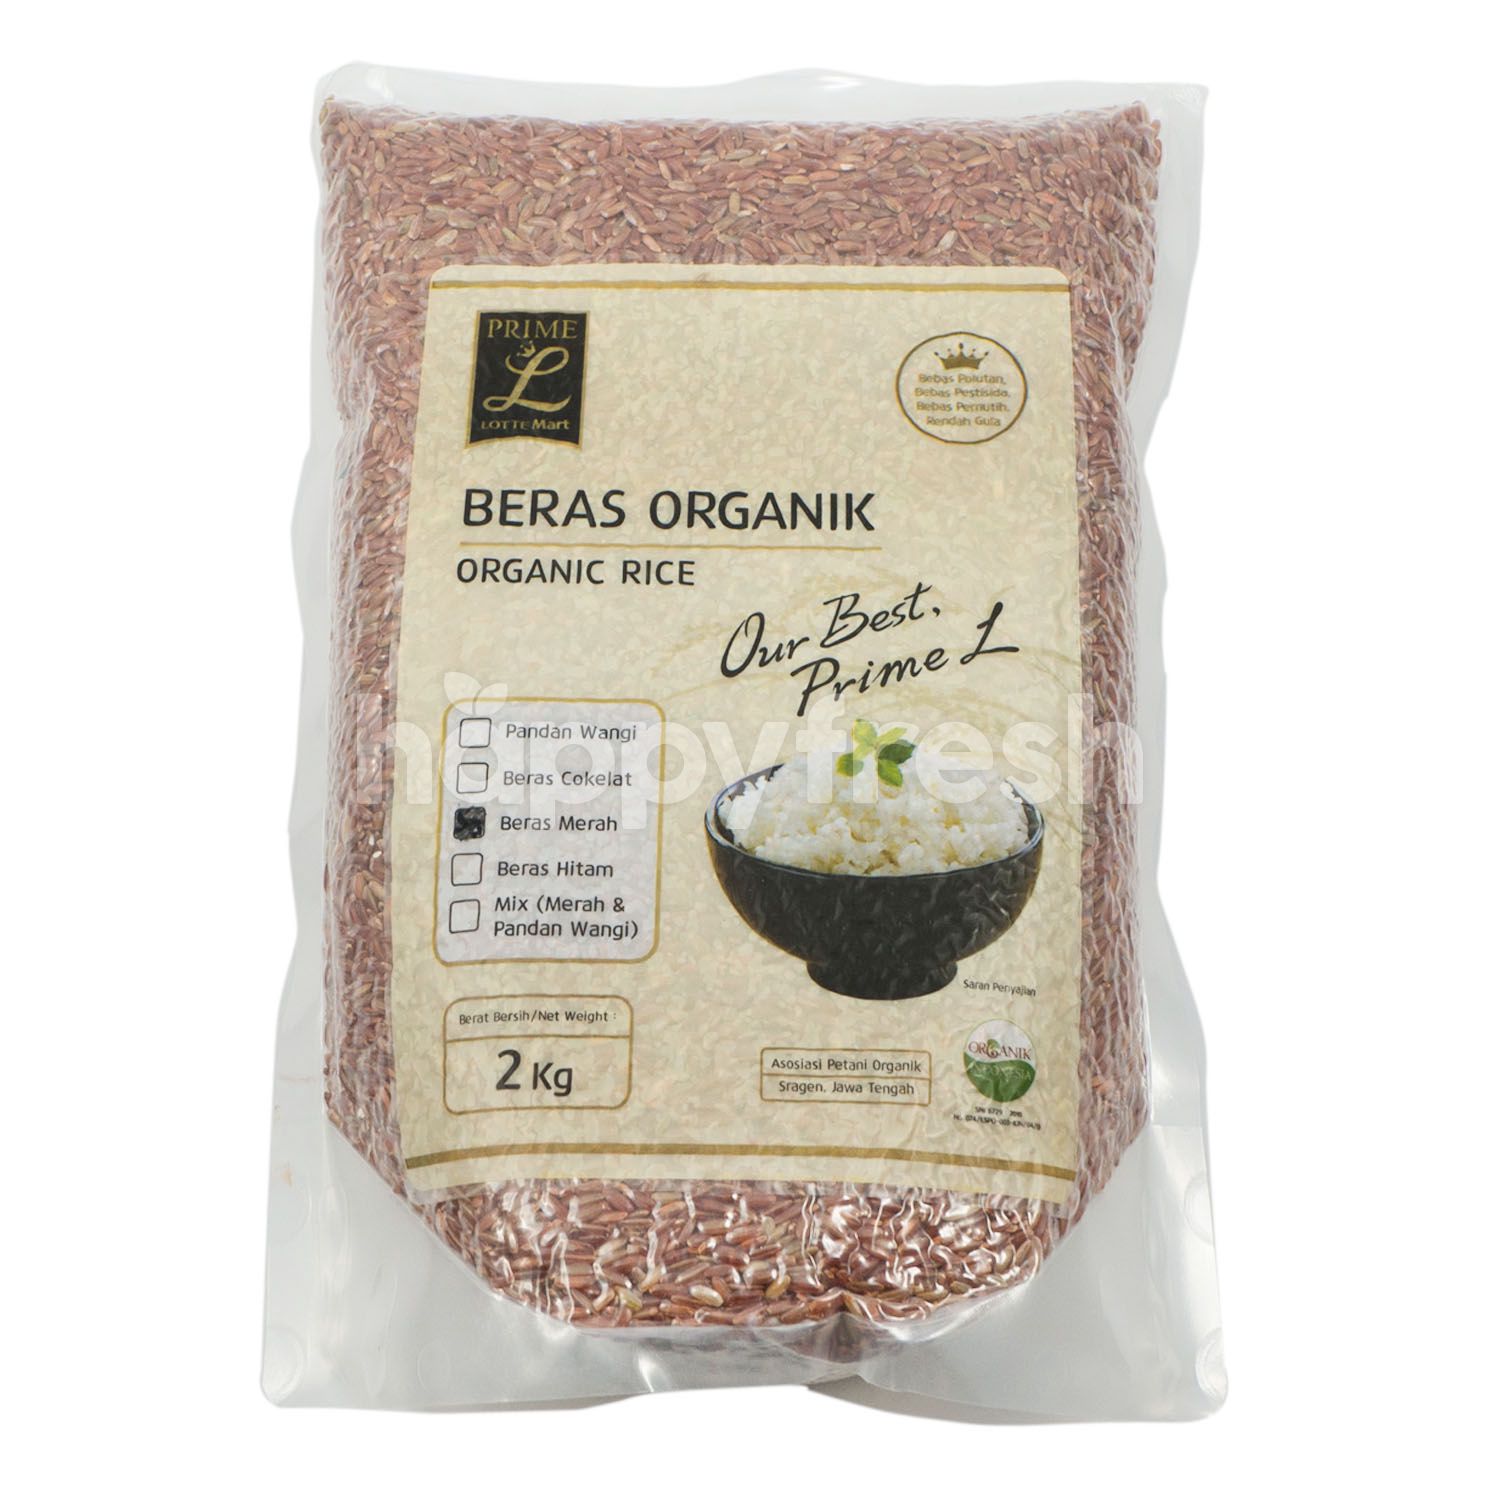 Jual Prime L Organic Red Rice di Lotte Mart - HappyFresh